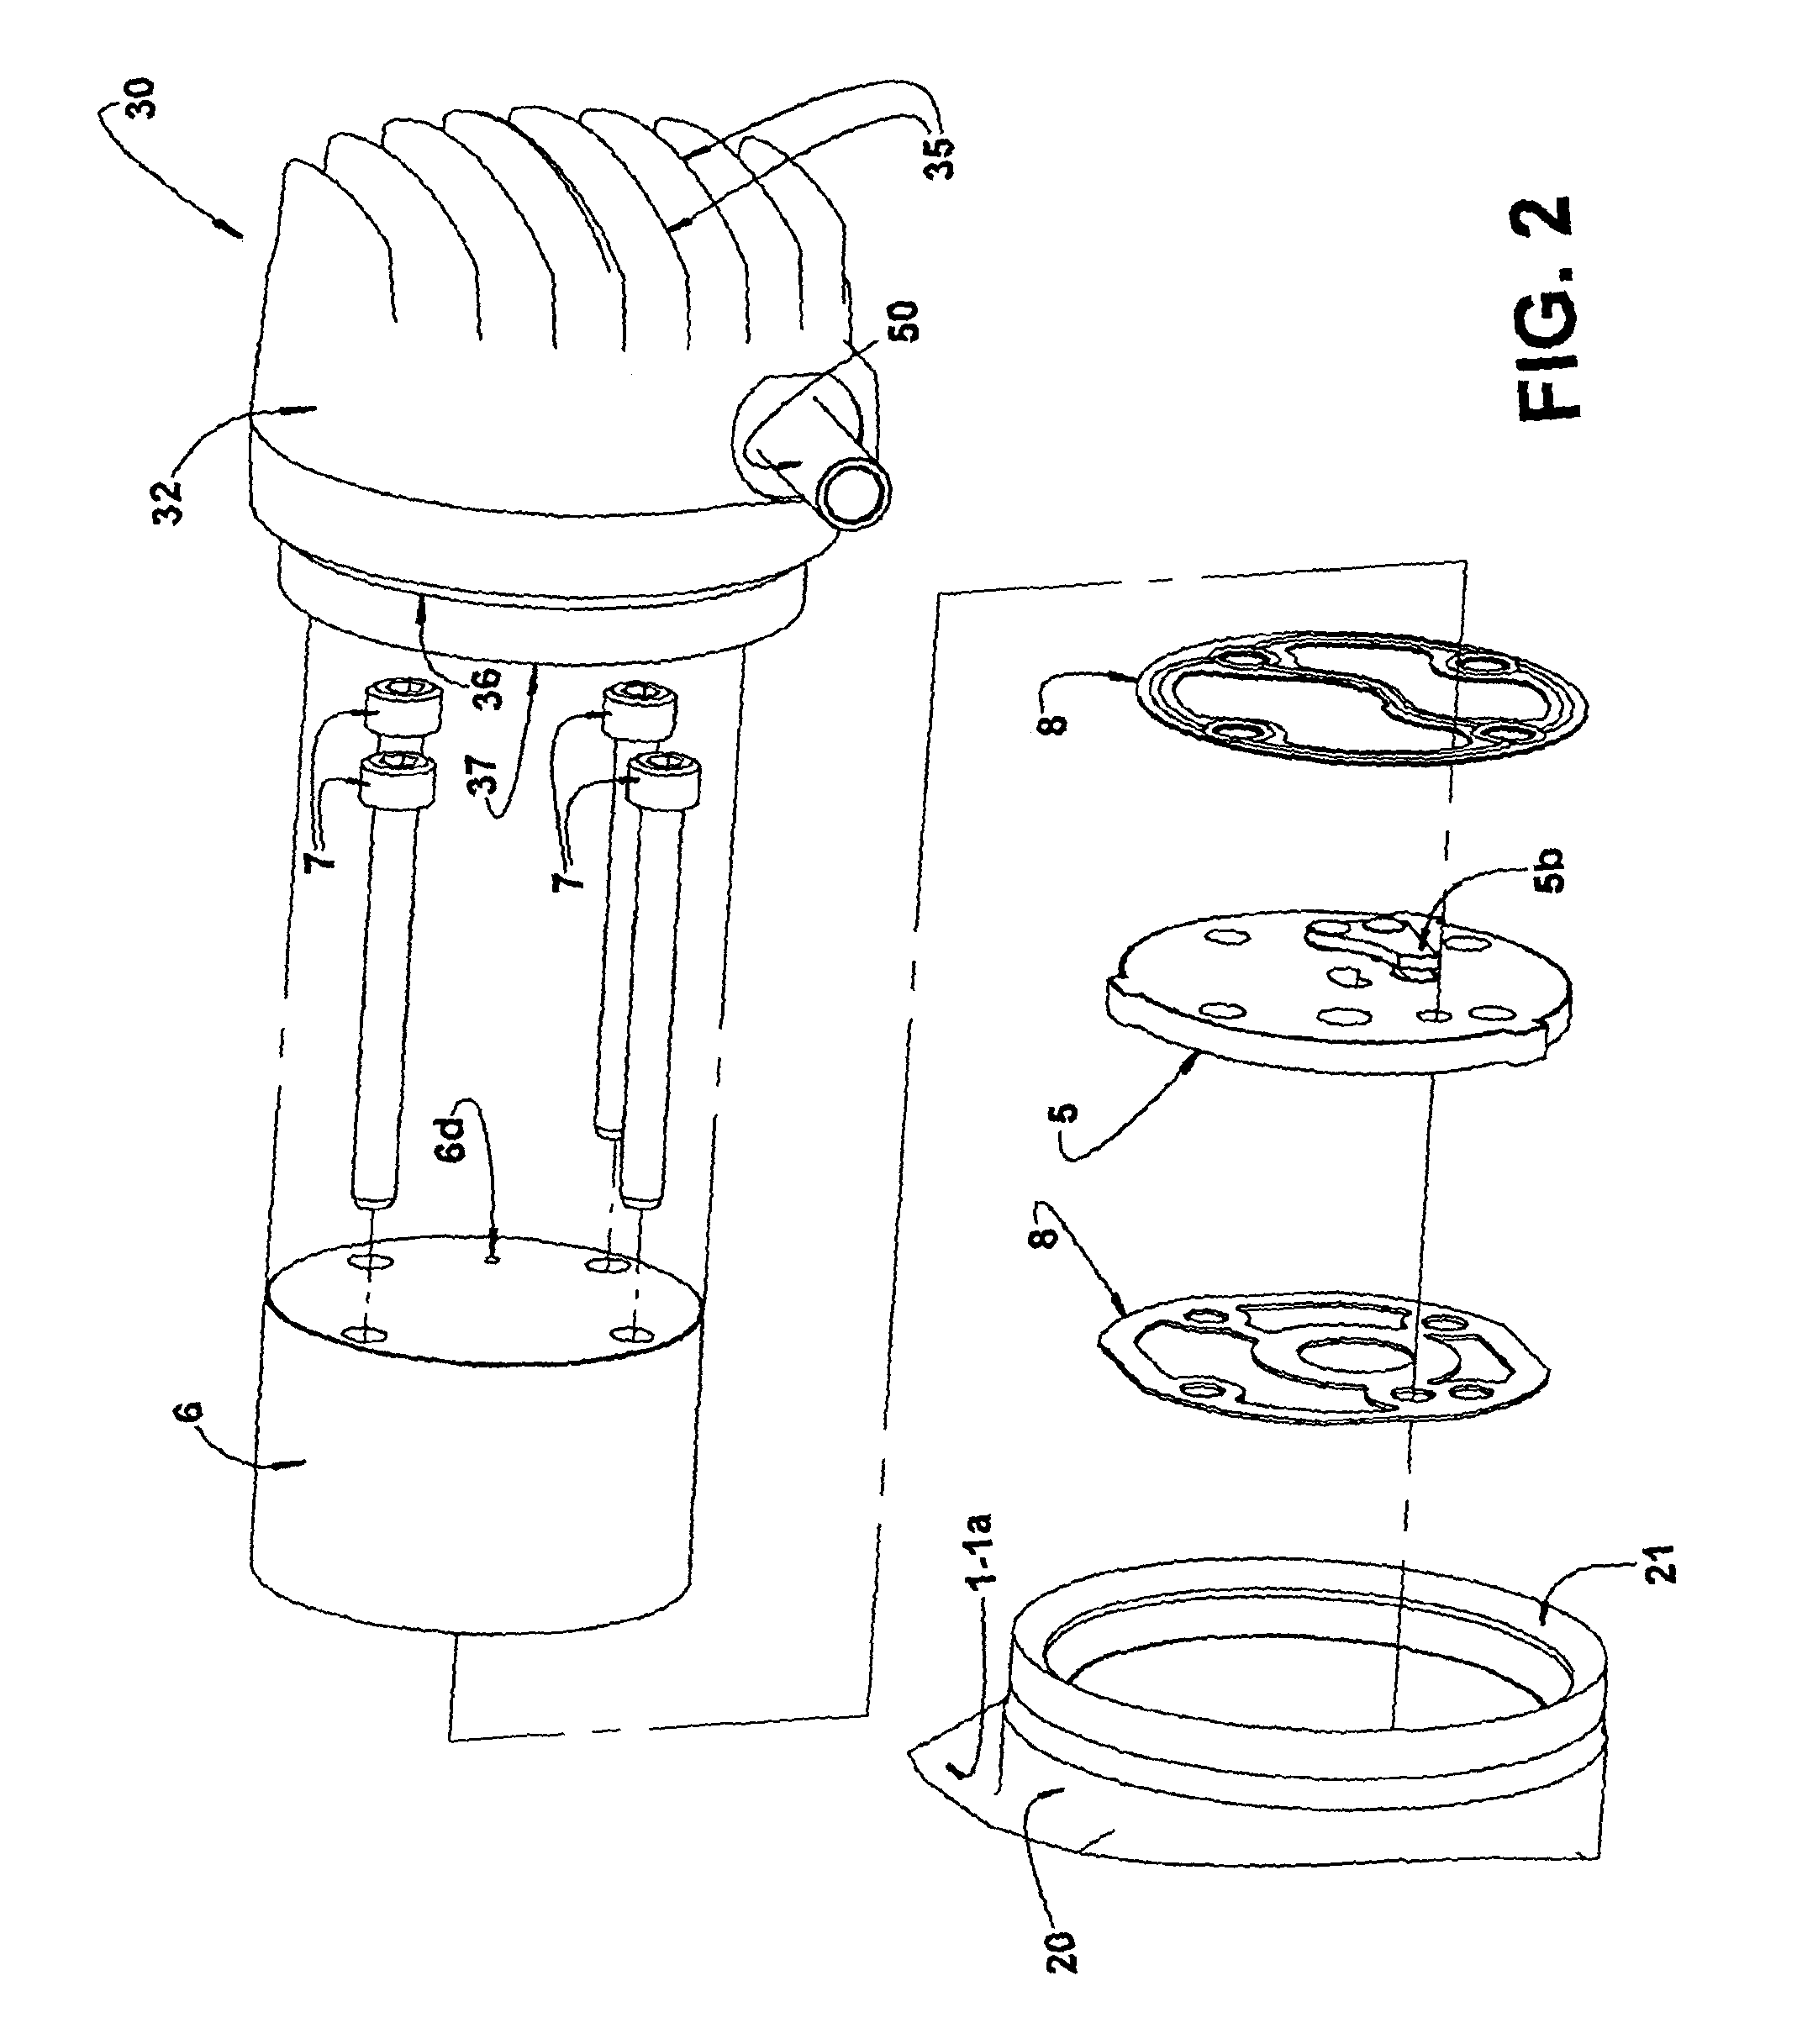 Constructive arrangement for a hermetic refrigeration compressor